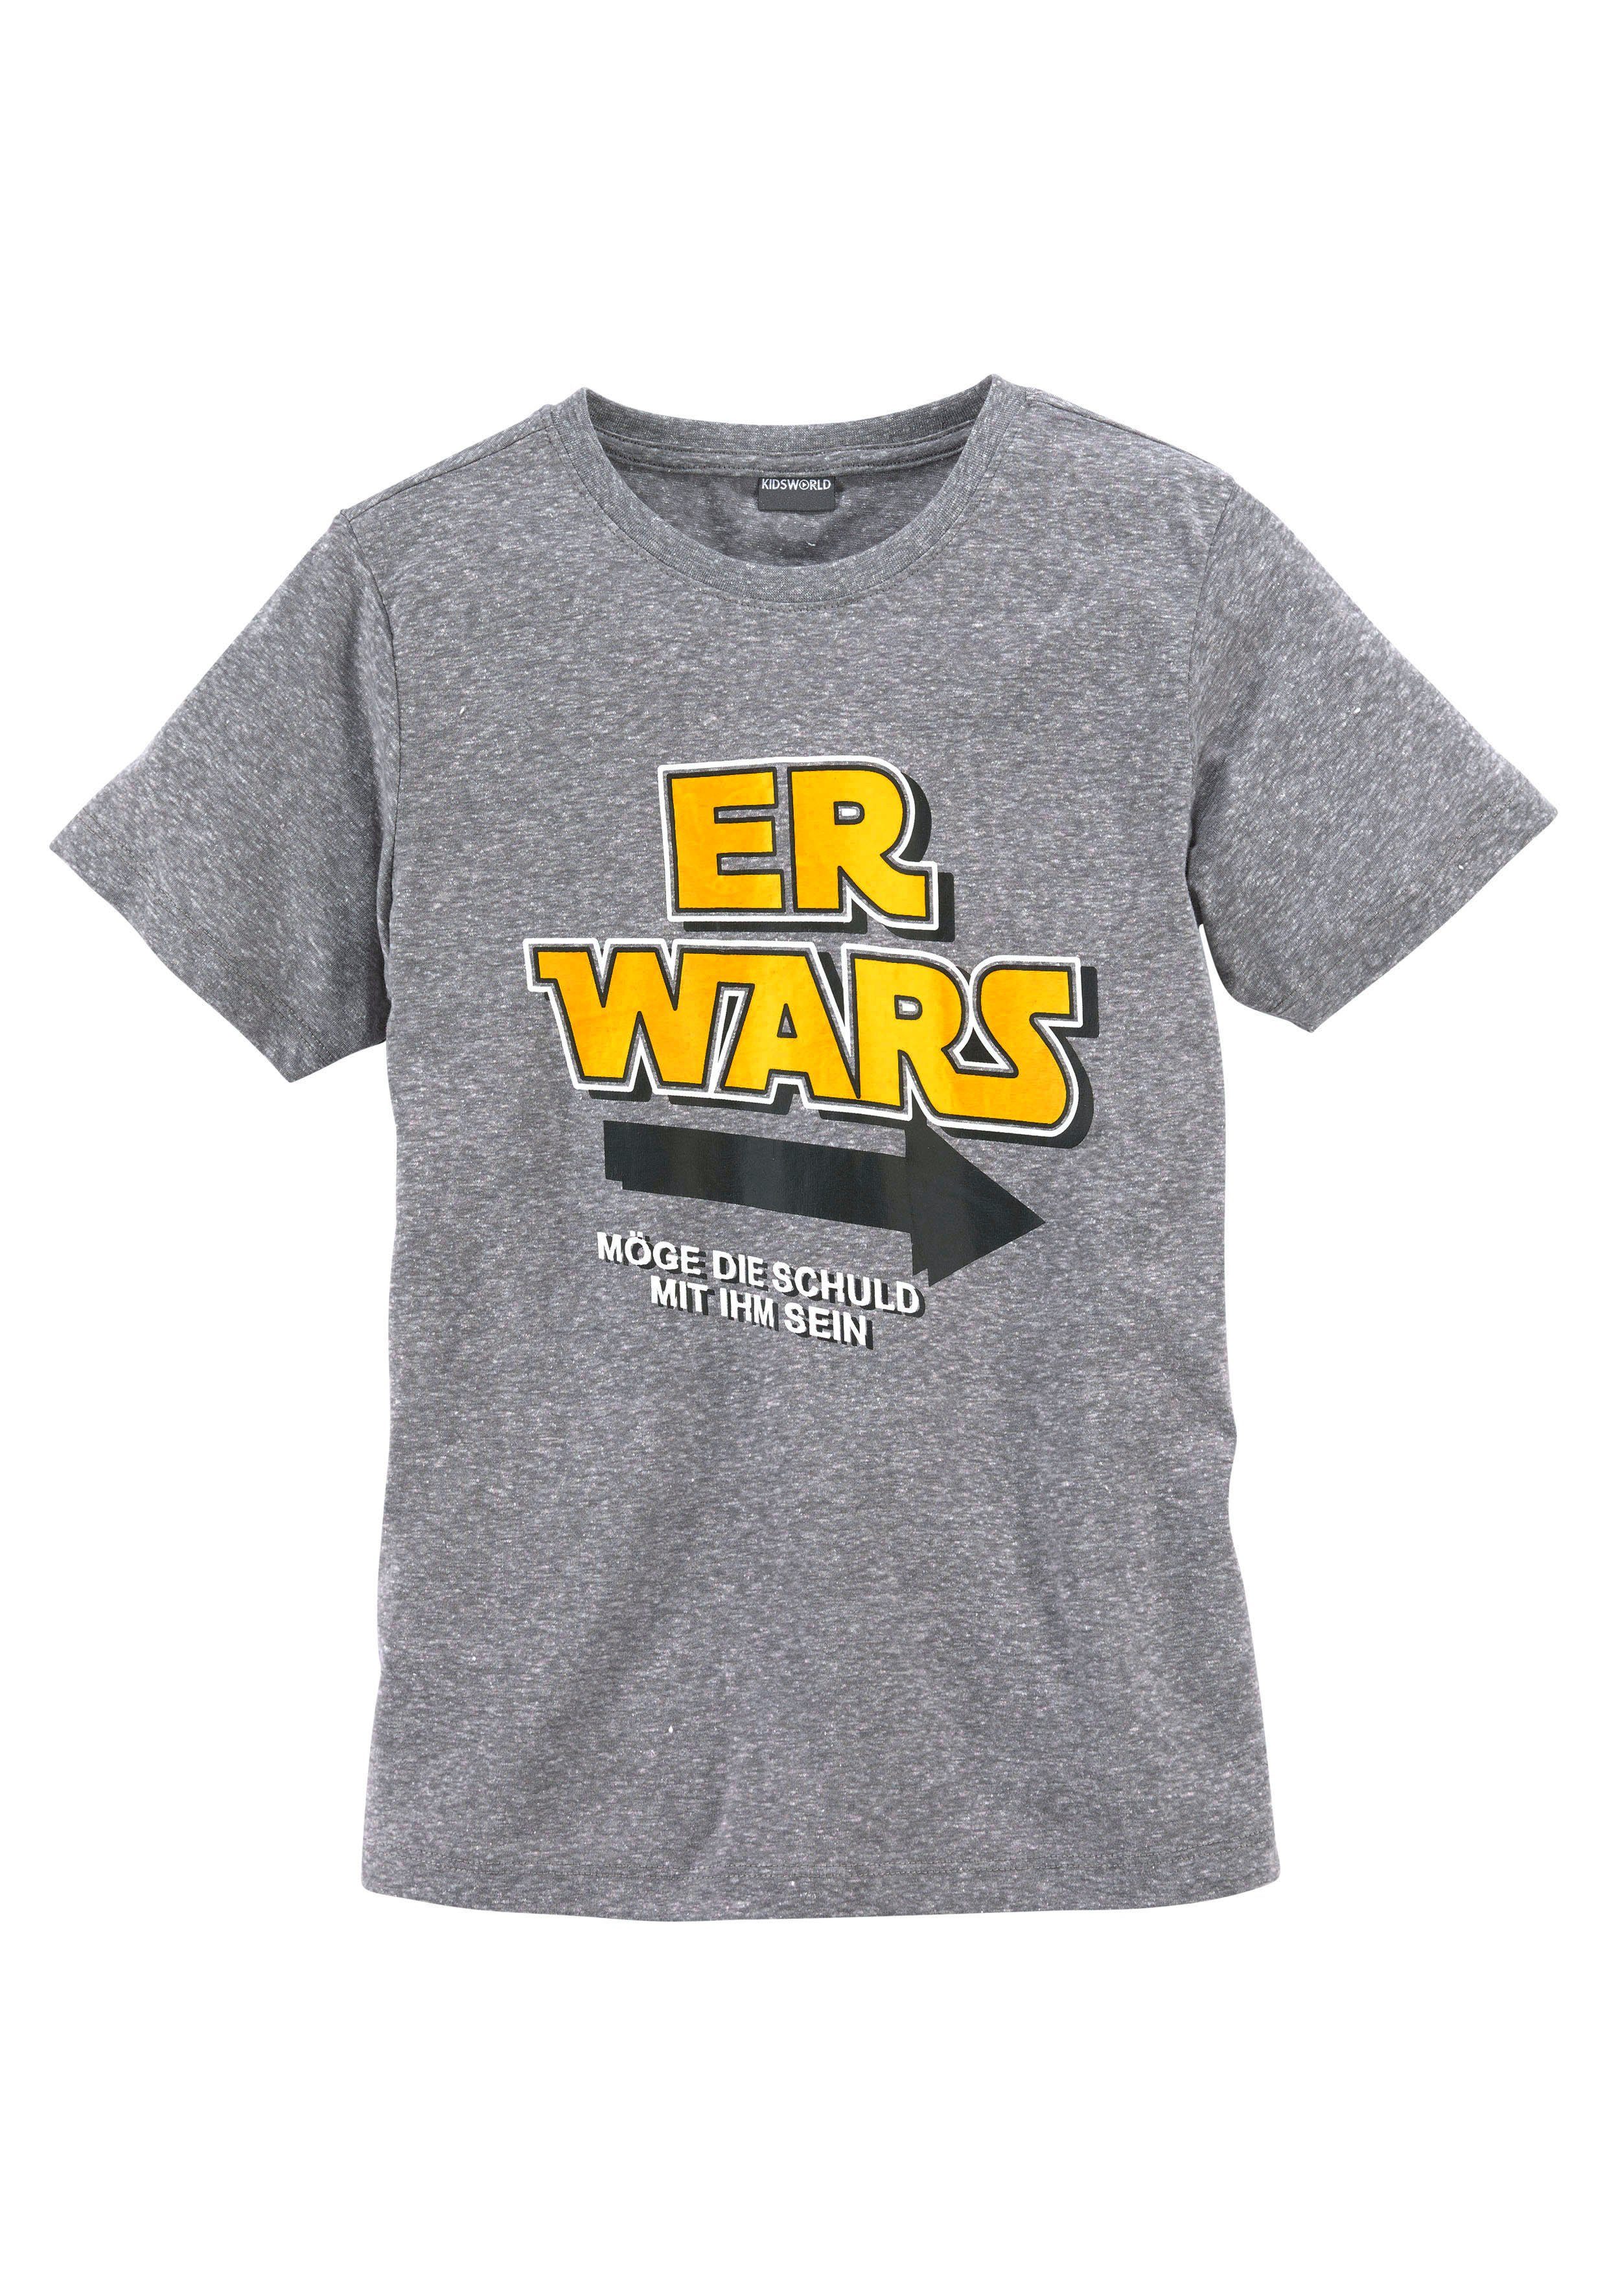 WARS, T-Shirt ER Spruch KIDSWORLD